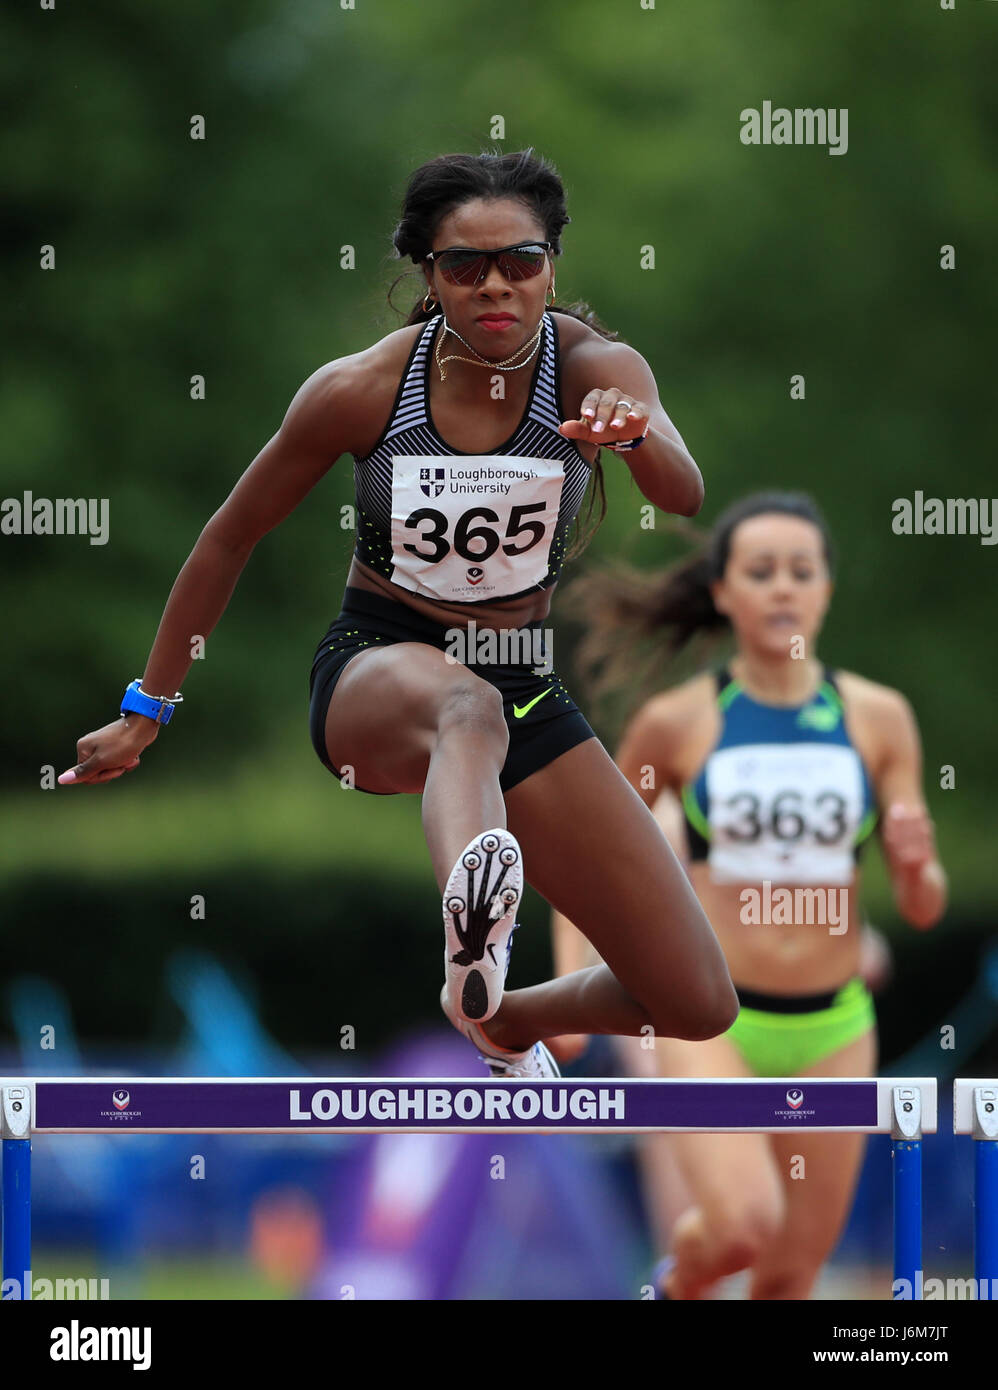 Deborah Rodriguez remporte le 400 mètres haies femmes invité pendant l'événement international d'athlétisme de Loughborough au stade de Paula Radcliffe. Banque D'Images